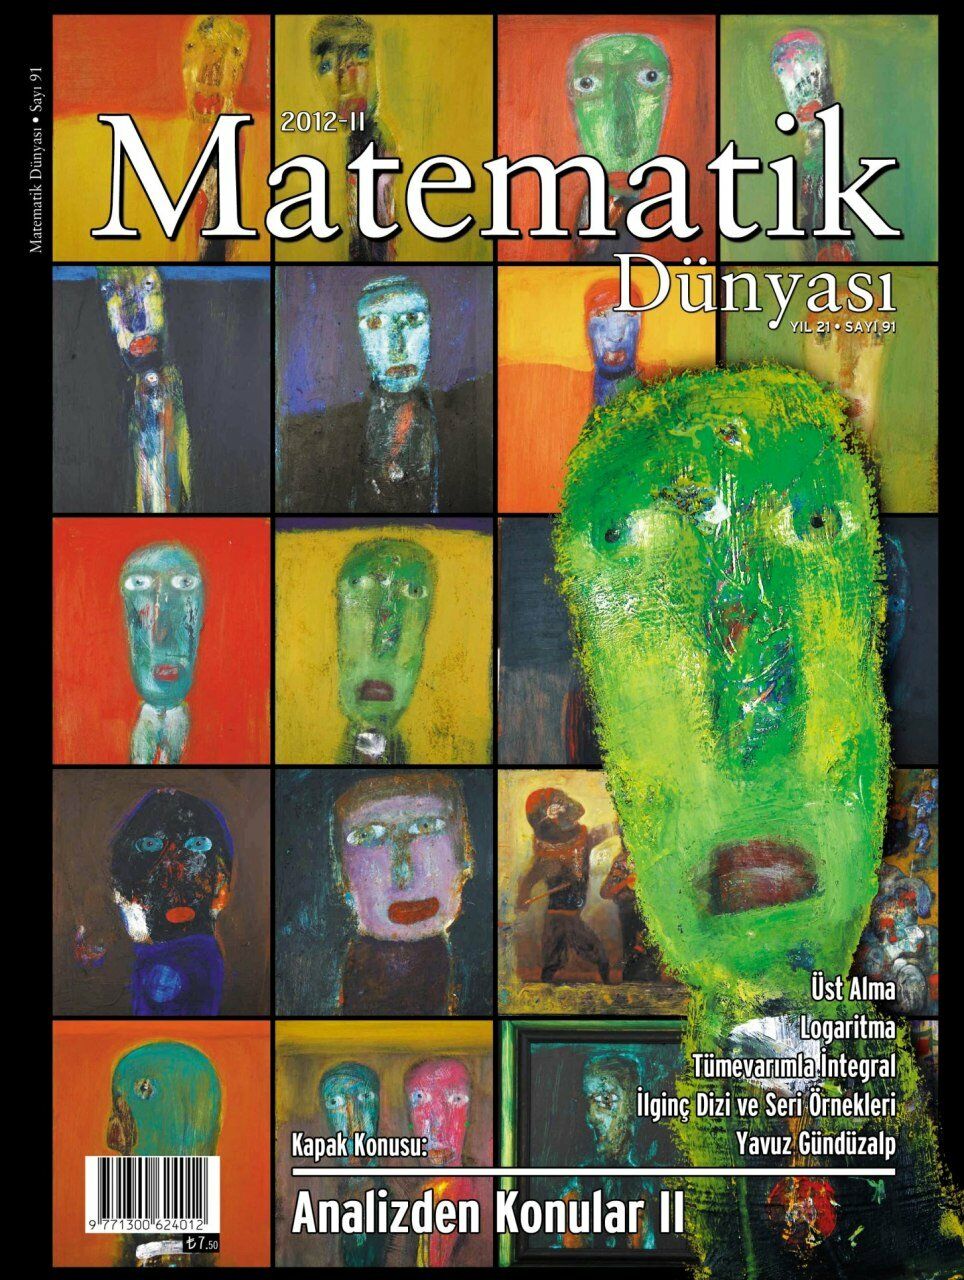 Matematik Dünyası Dergisi Sayı:91 Yıl:2012 - II